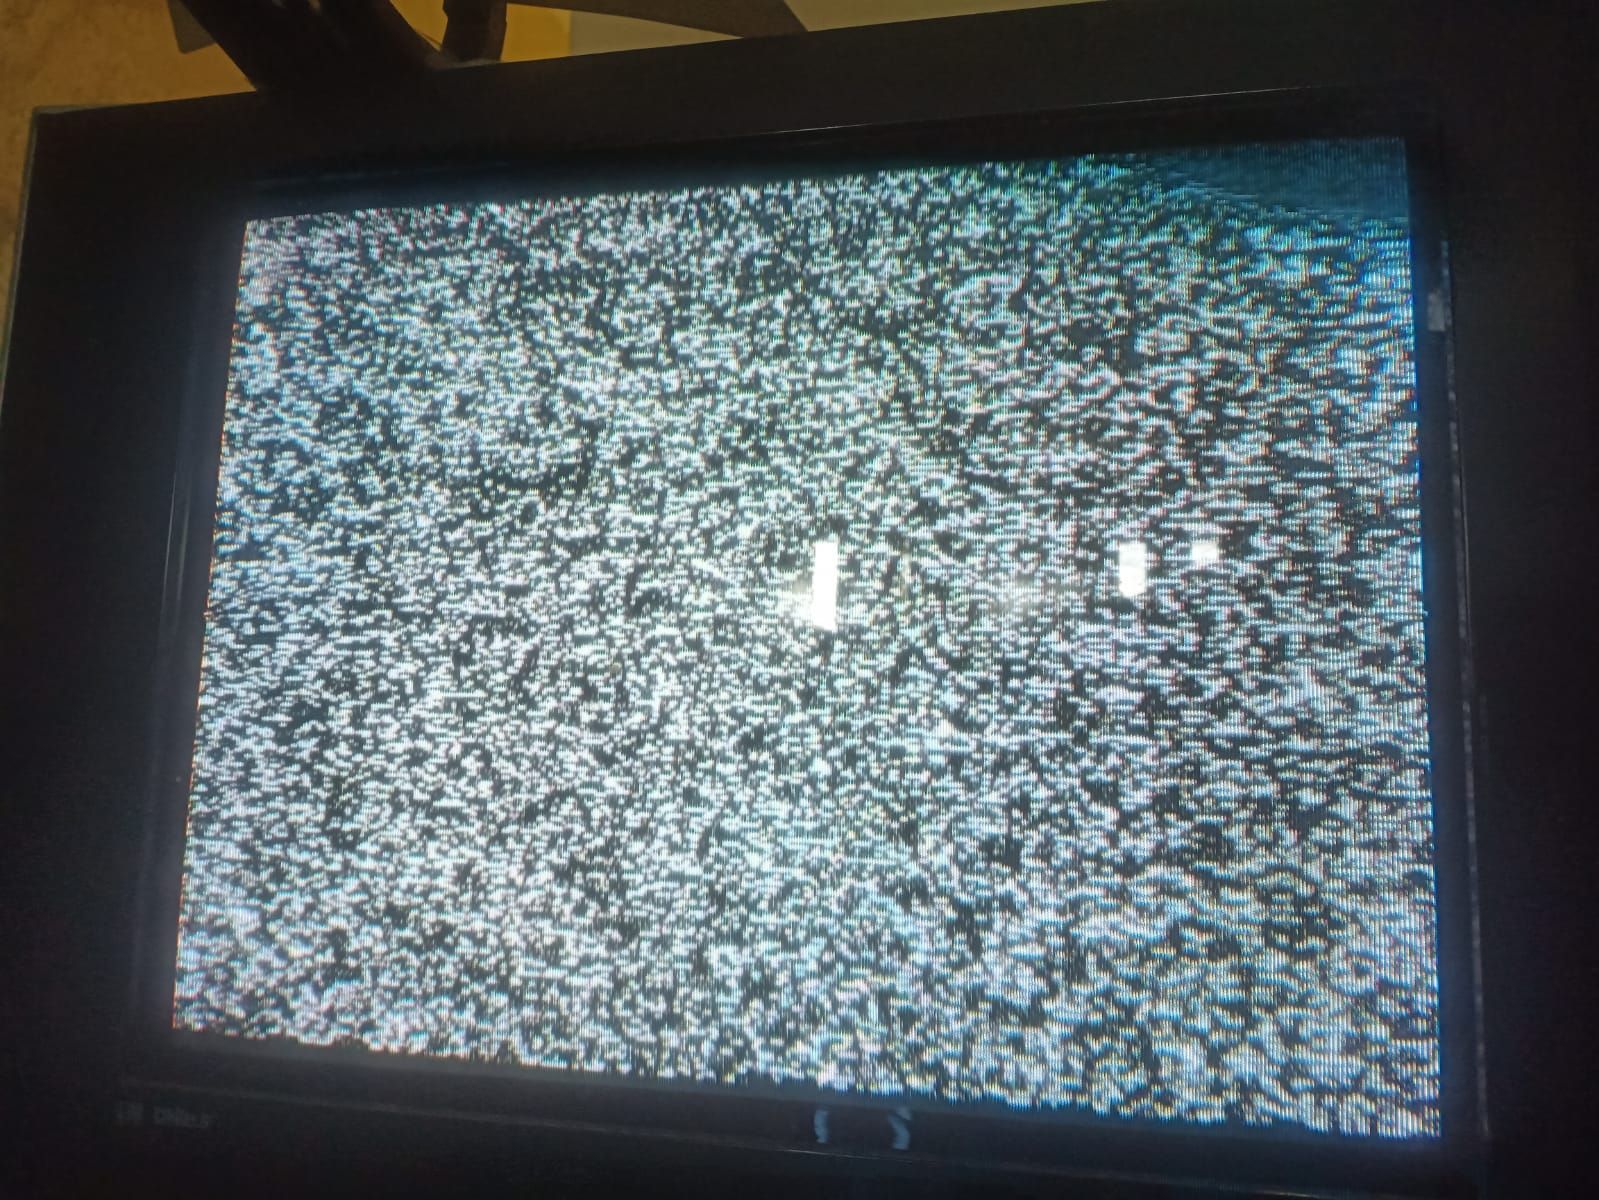 Layanan TV Analog di Bali dihentikan.